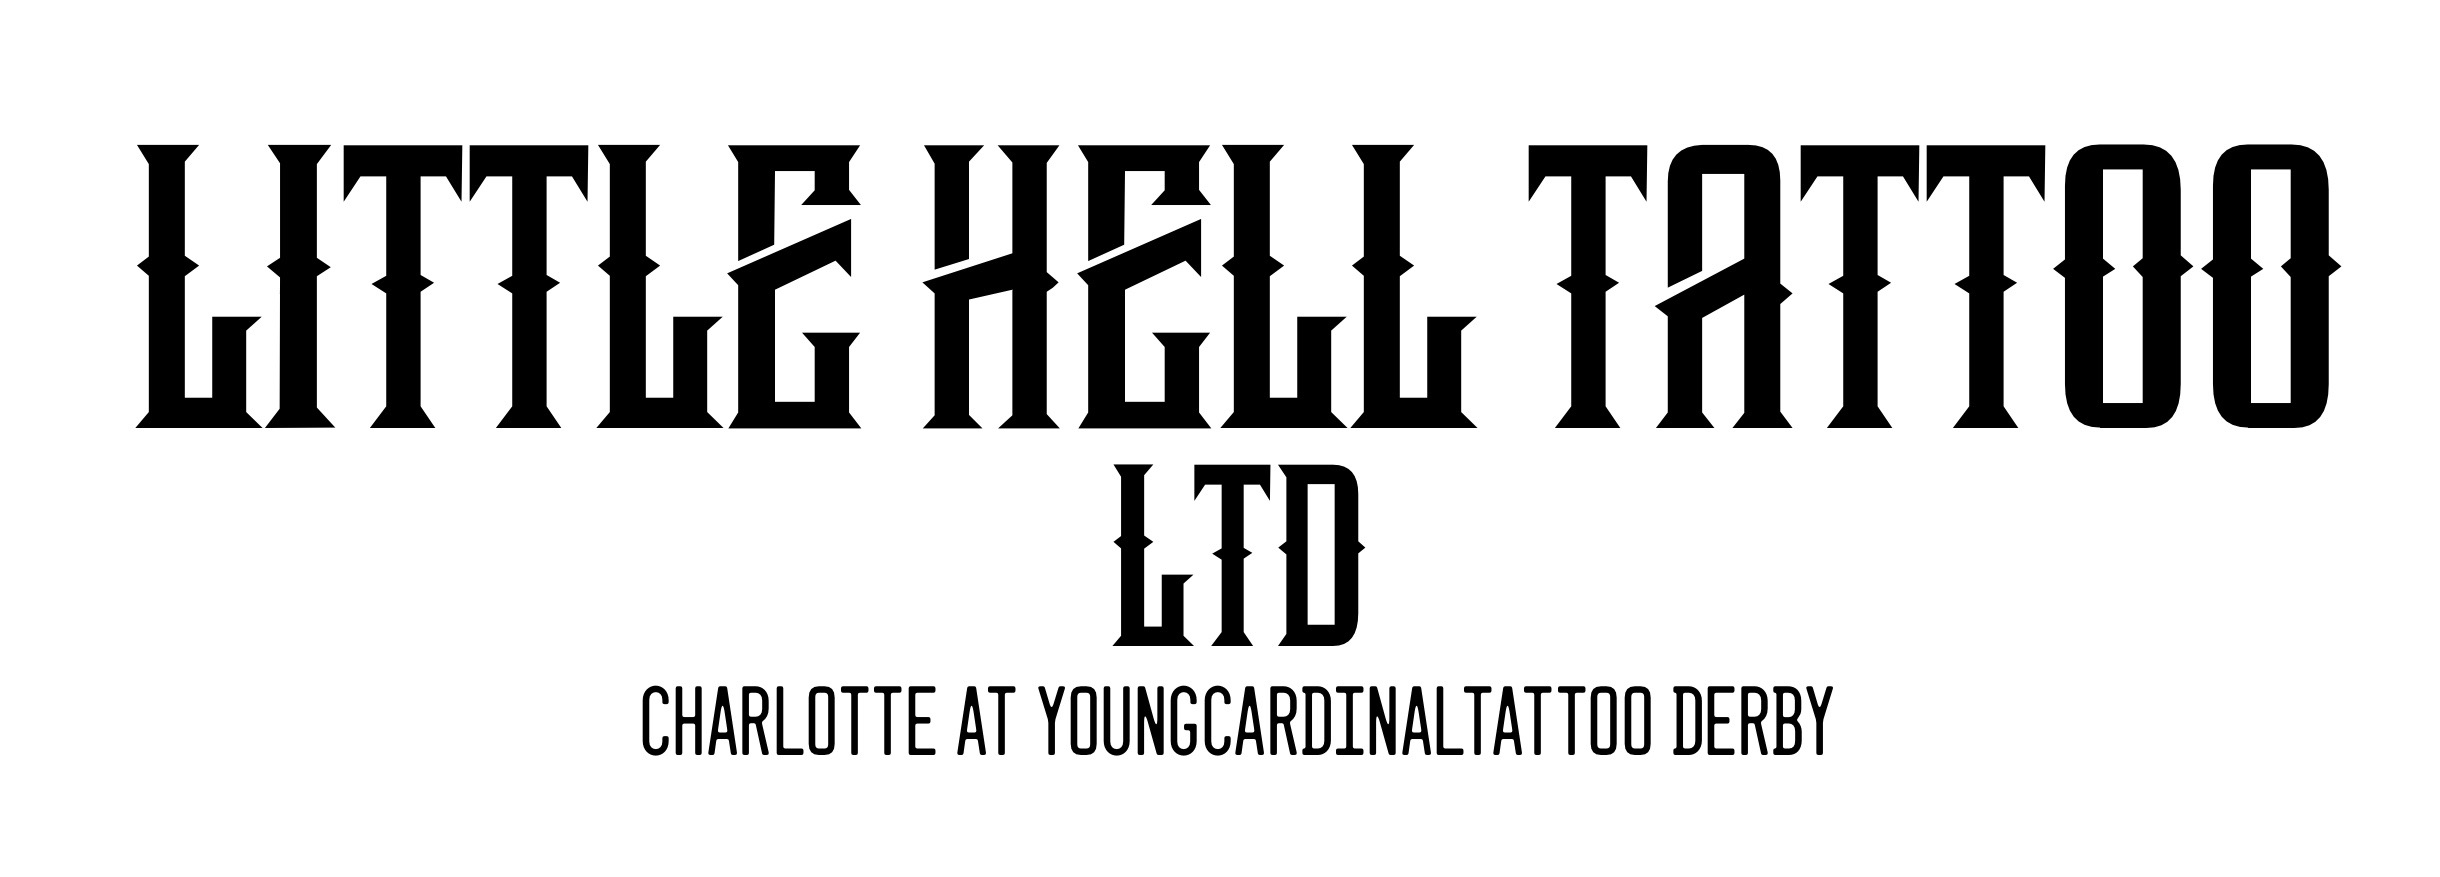 Little Hell Tattoo LTD